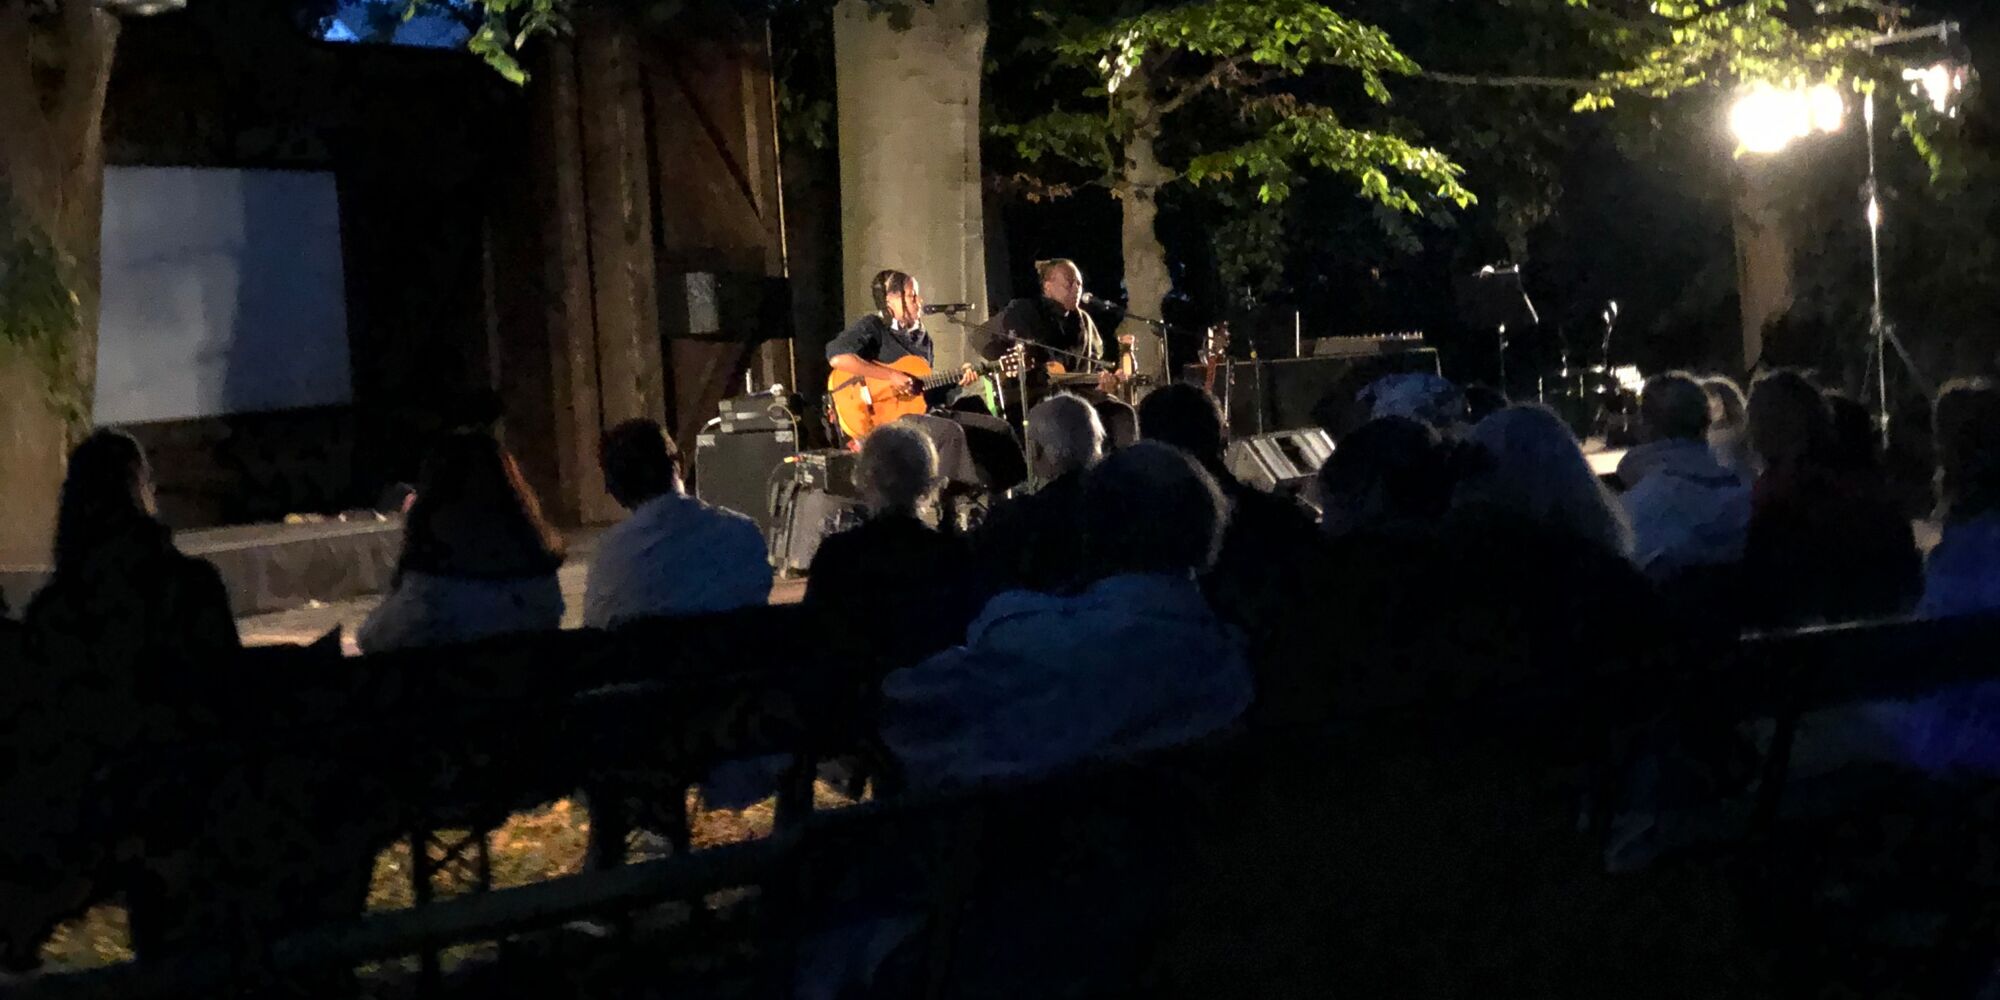 Hier sieht man Wally und Ami Warning auf der Freilichtbühne der Mohr-Villa Freimann am Abend. Sie haben jeweils eine Gitarre und ein Mikrofon vor sich. Im Vordergrund ist das Publikum zu erkennen. Auf der Bühne stehen zwei große Bäume.